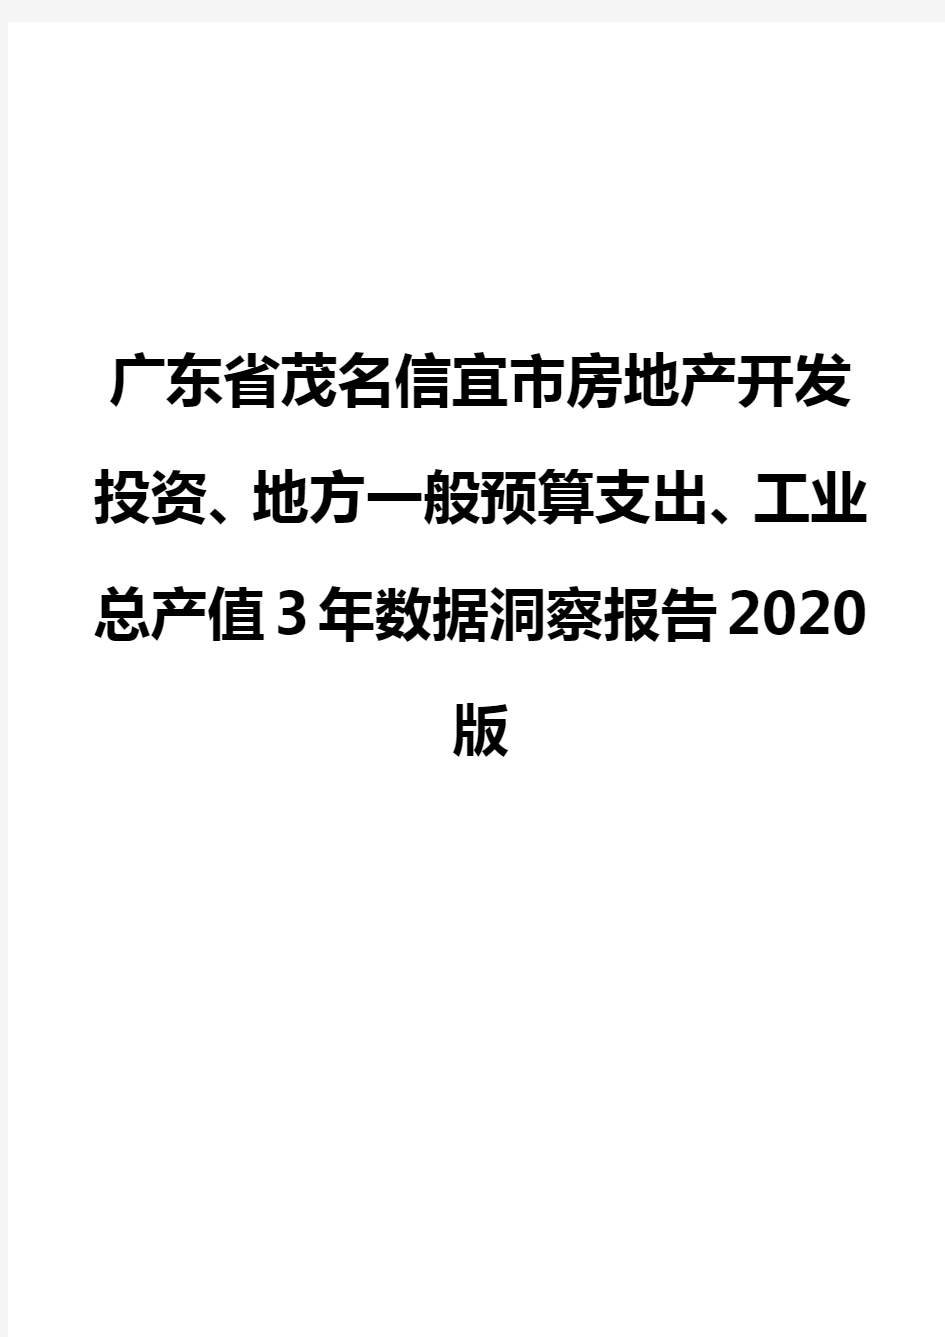 广东省茂名信宜市房地产开发投资、地方一般预算支出、工业总产值3年数据洞察报告2020版